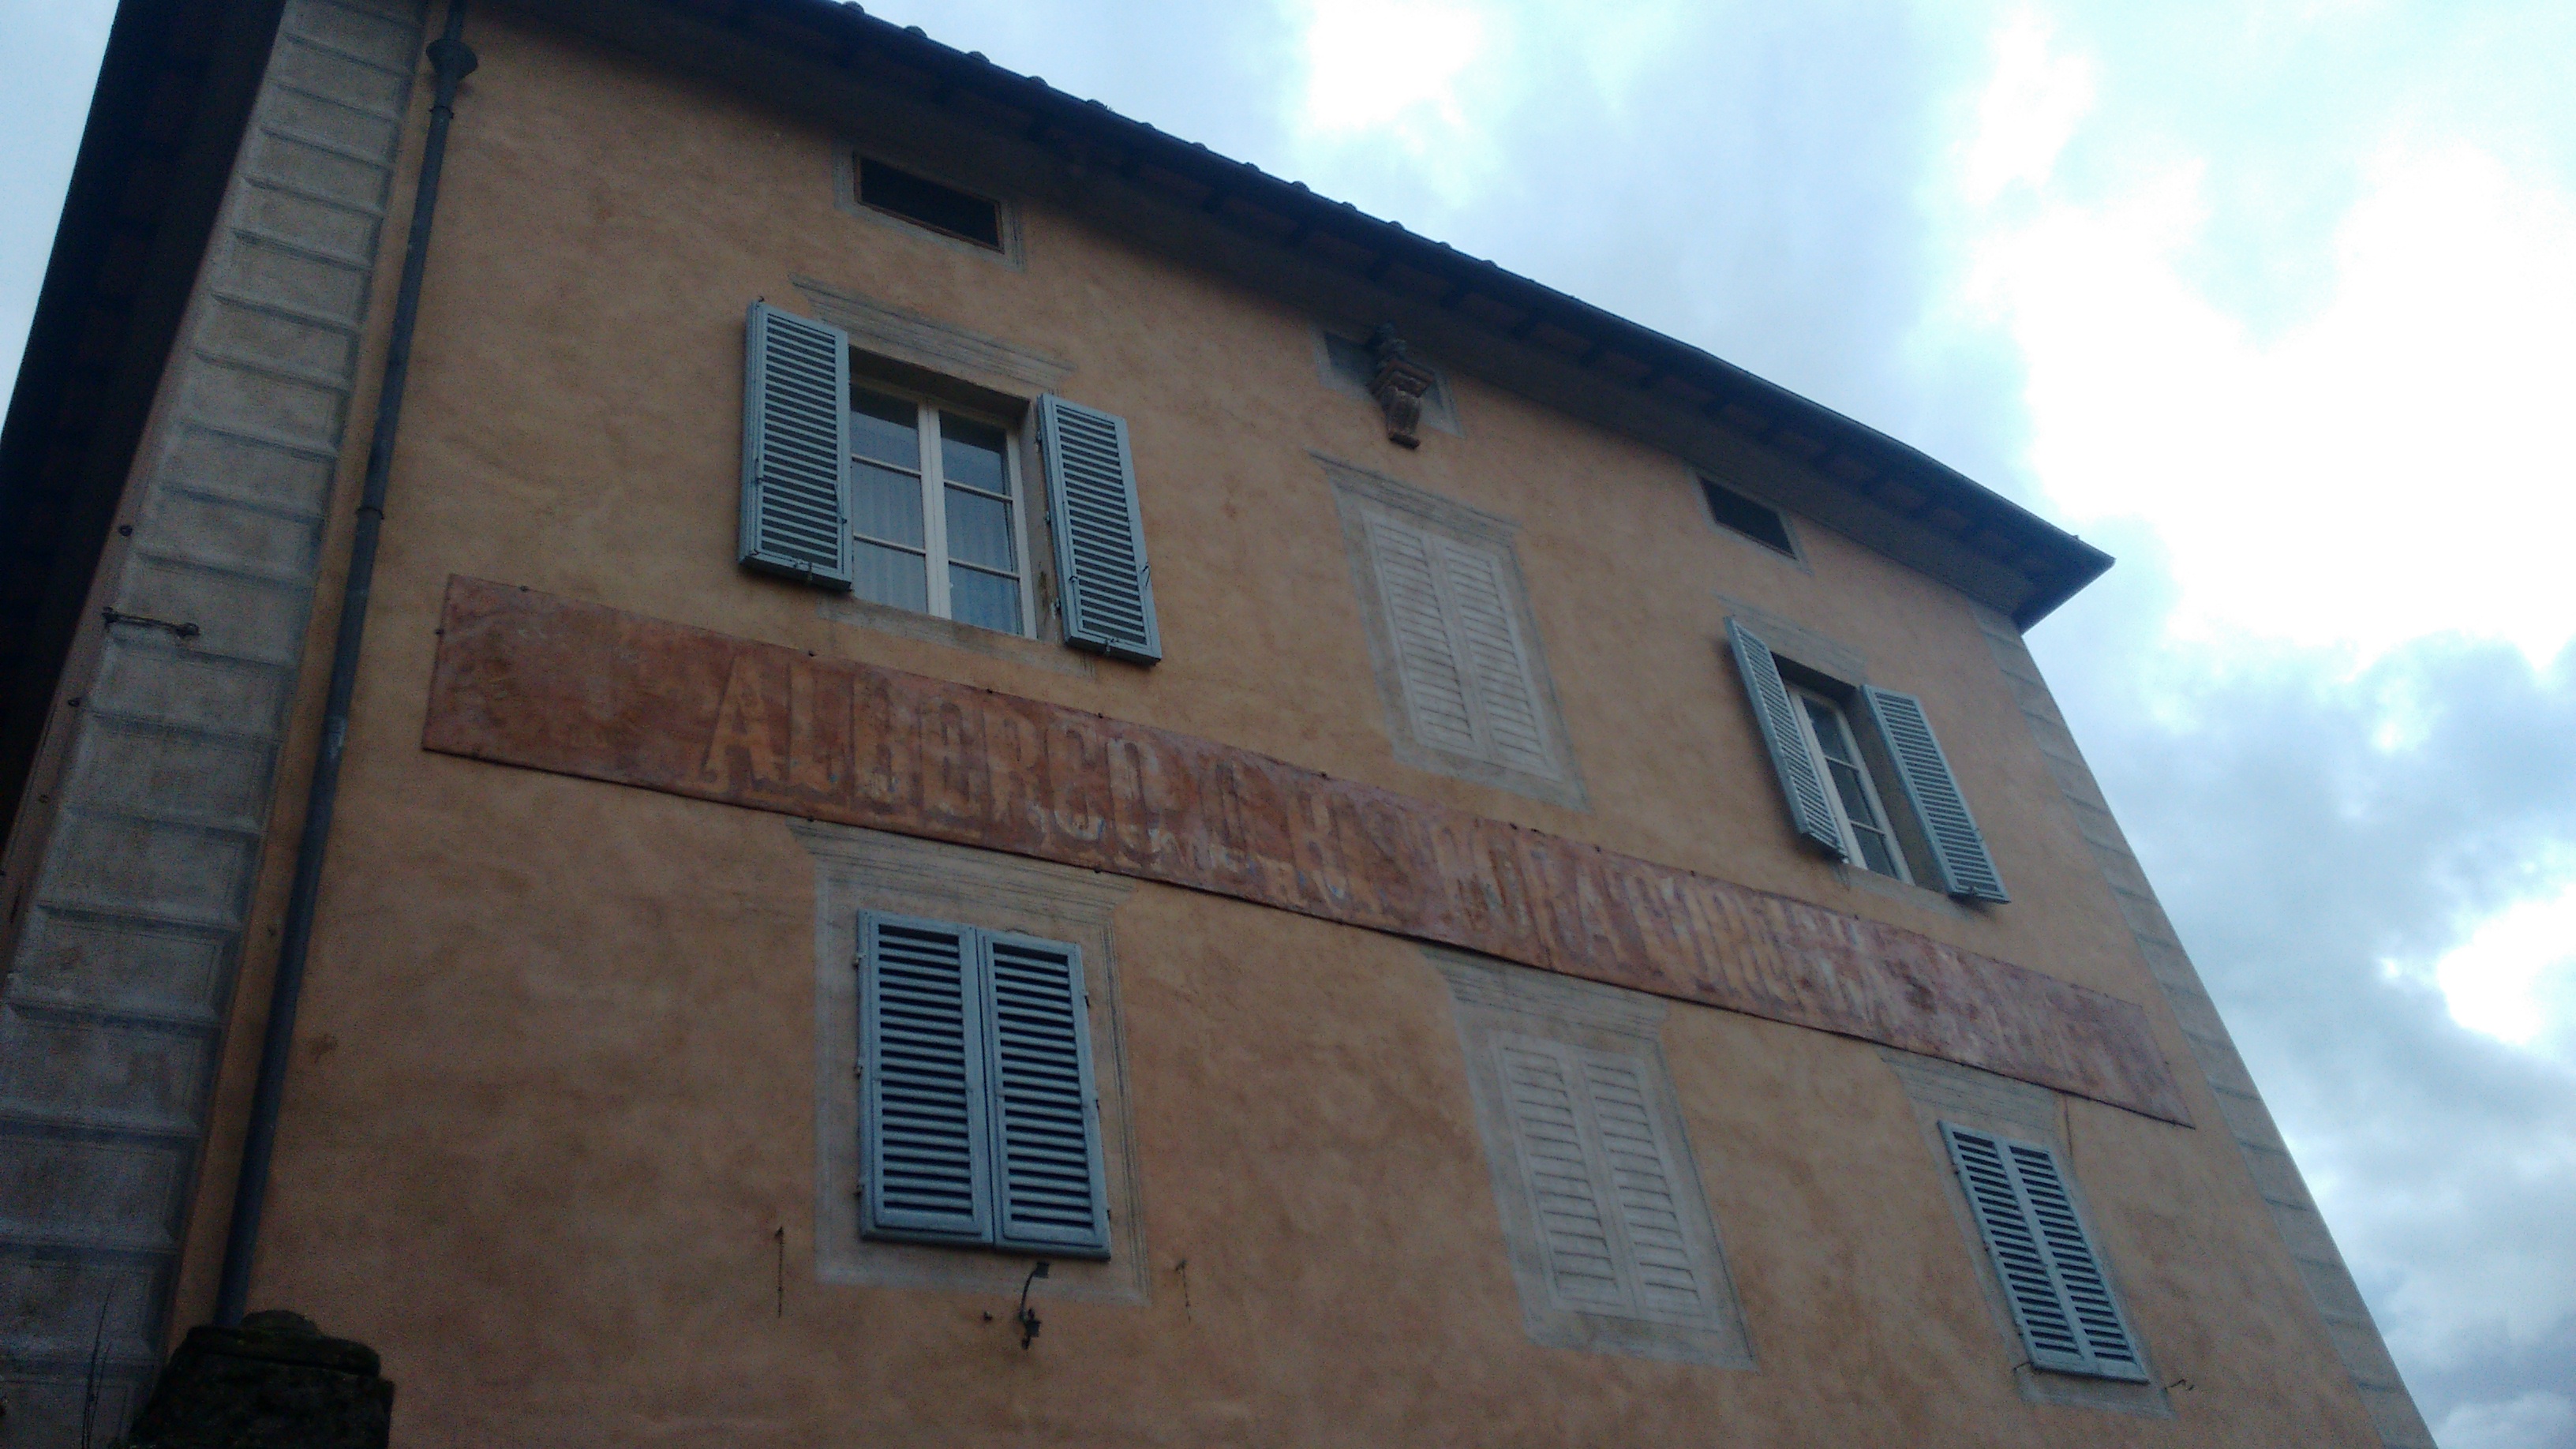 “Tracce di vita sui muri di Siena” con la Guide di Siena